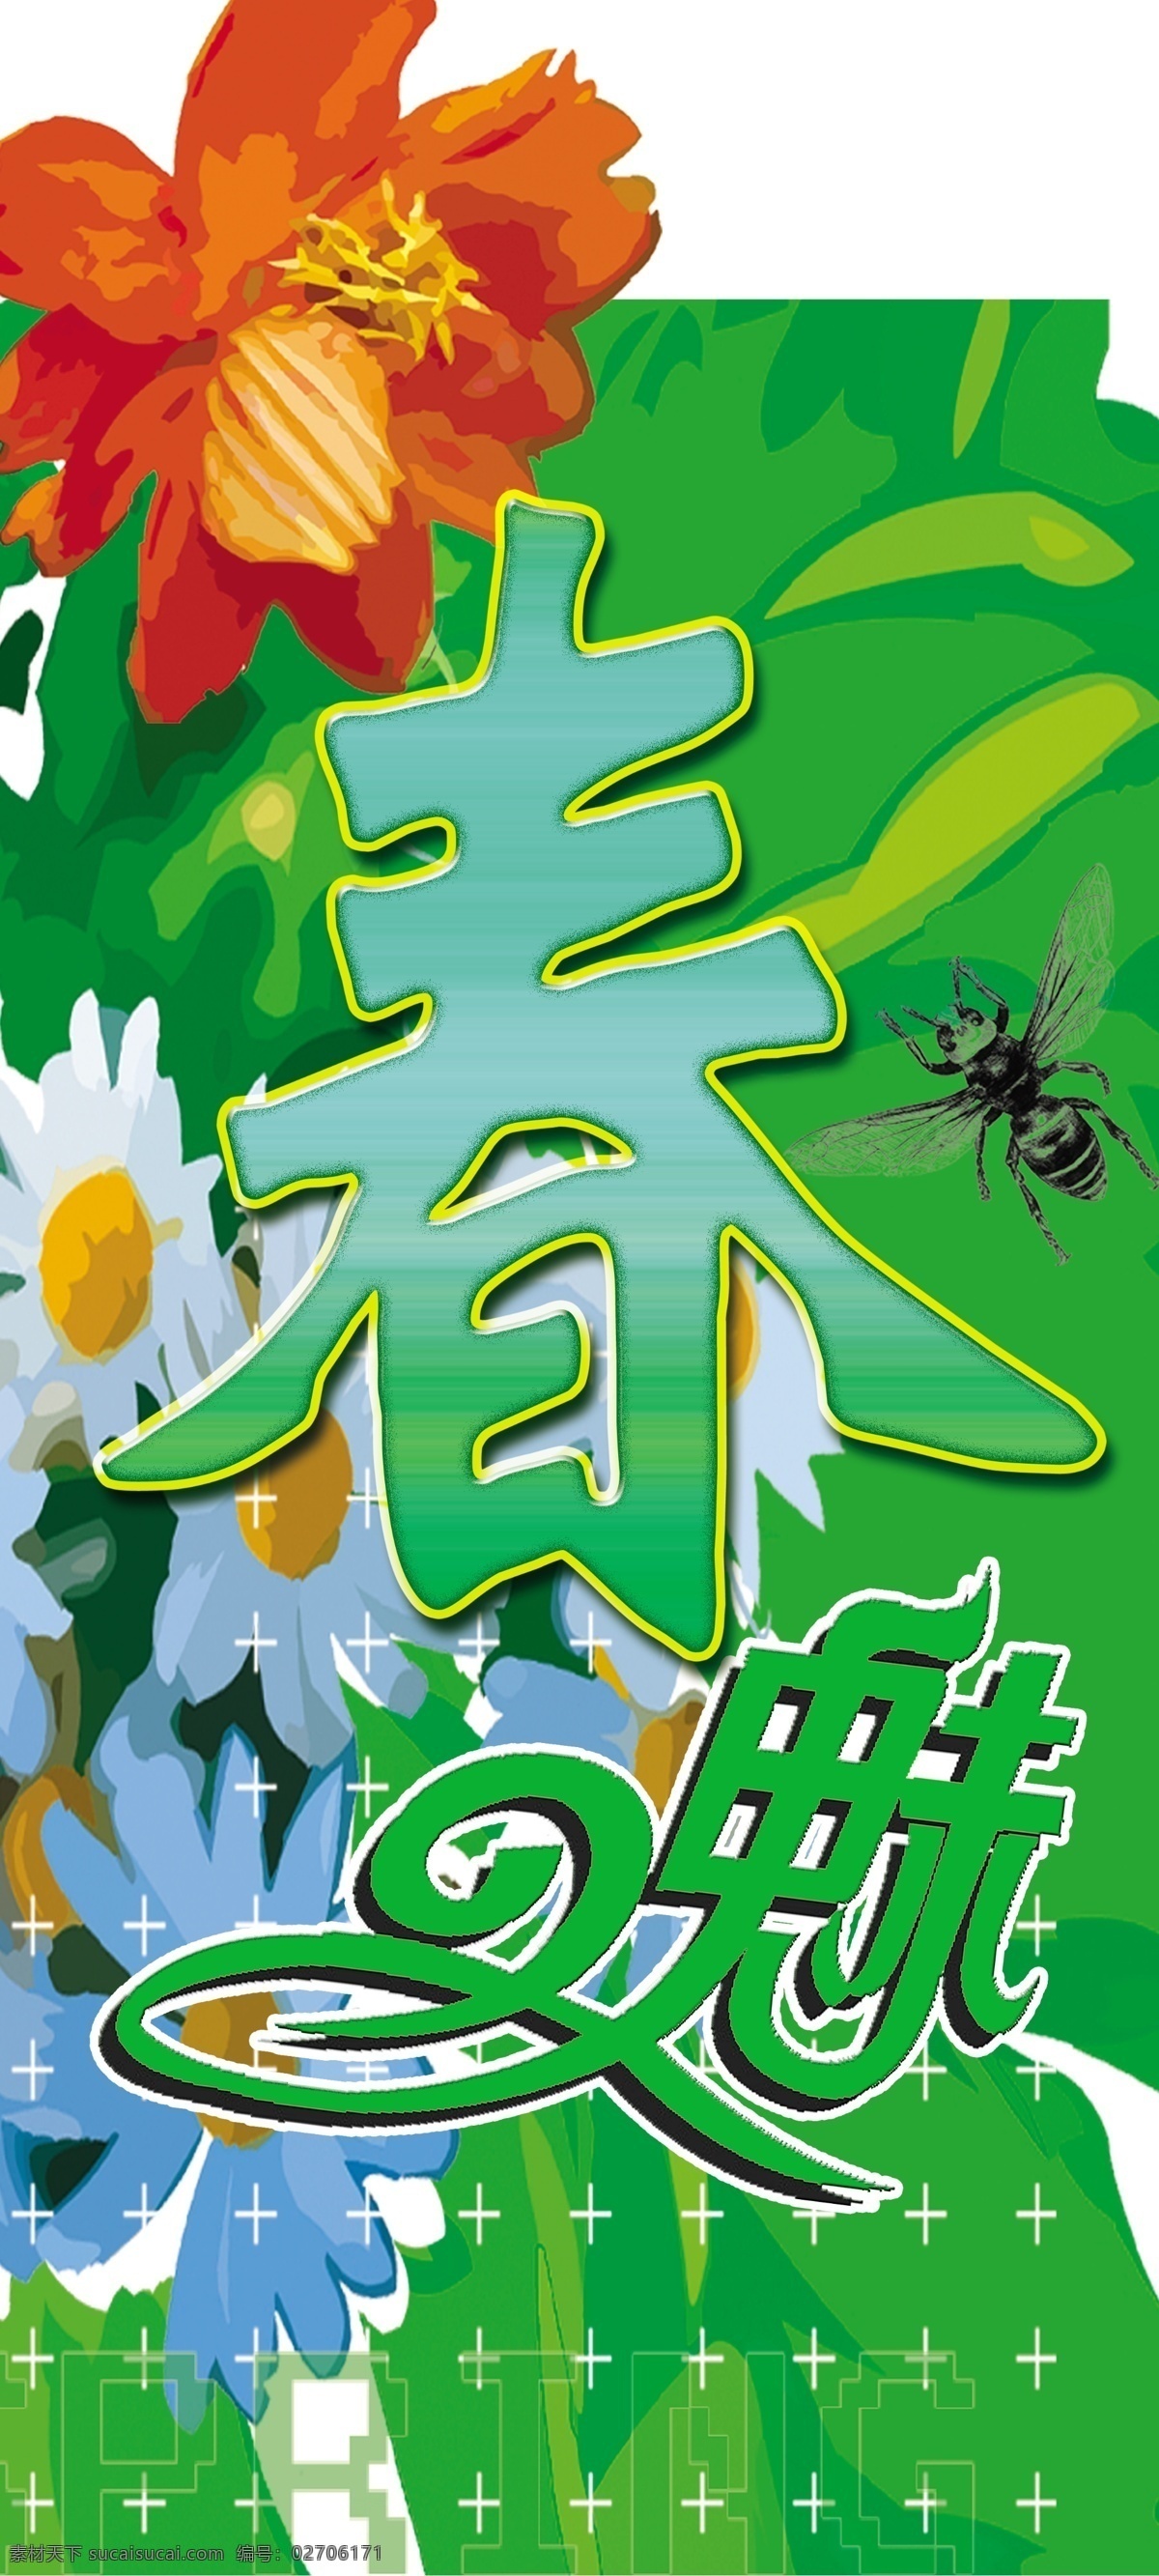 春天 商场 挂 旗 竖 版 广告设计模板 昆虫 水彩花朵 源文件 春天商场吊旗 春之魅 生物世界